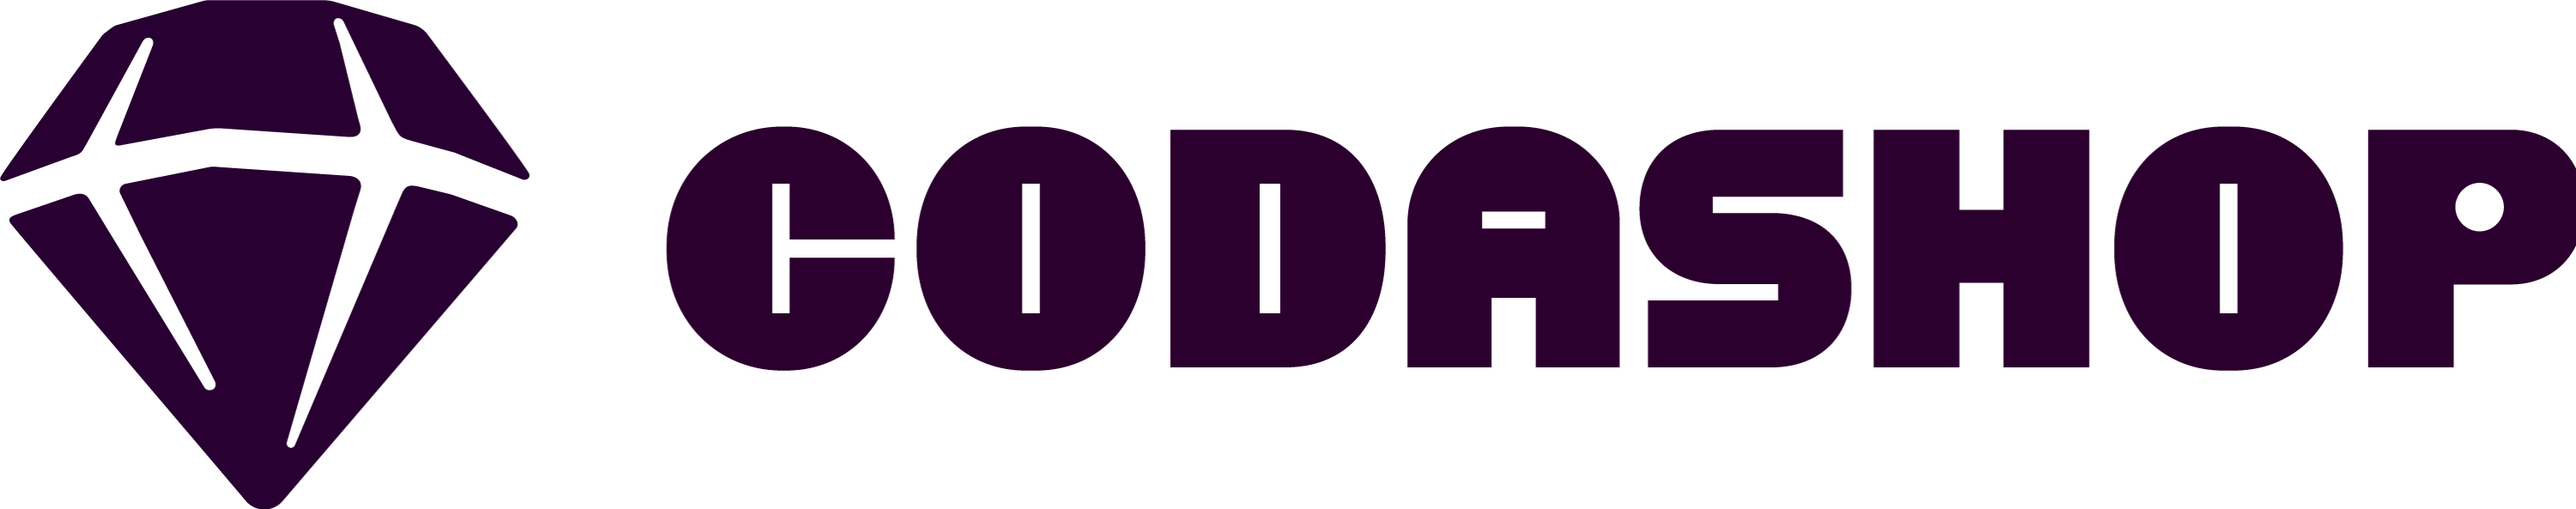 Codashop-logo-horisontal-darkmatter.png